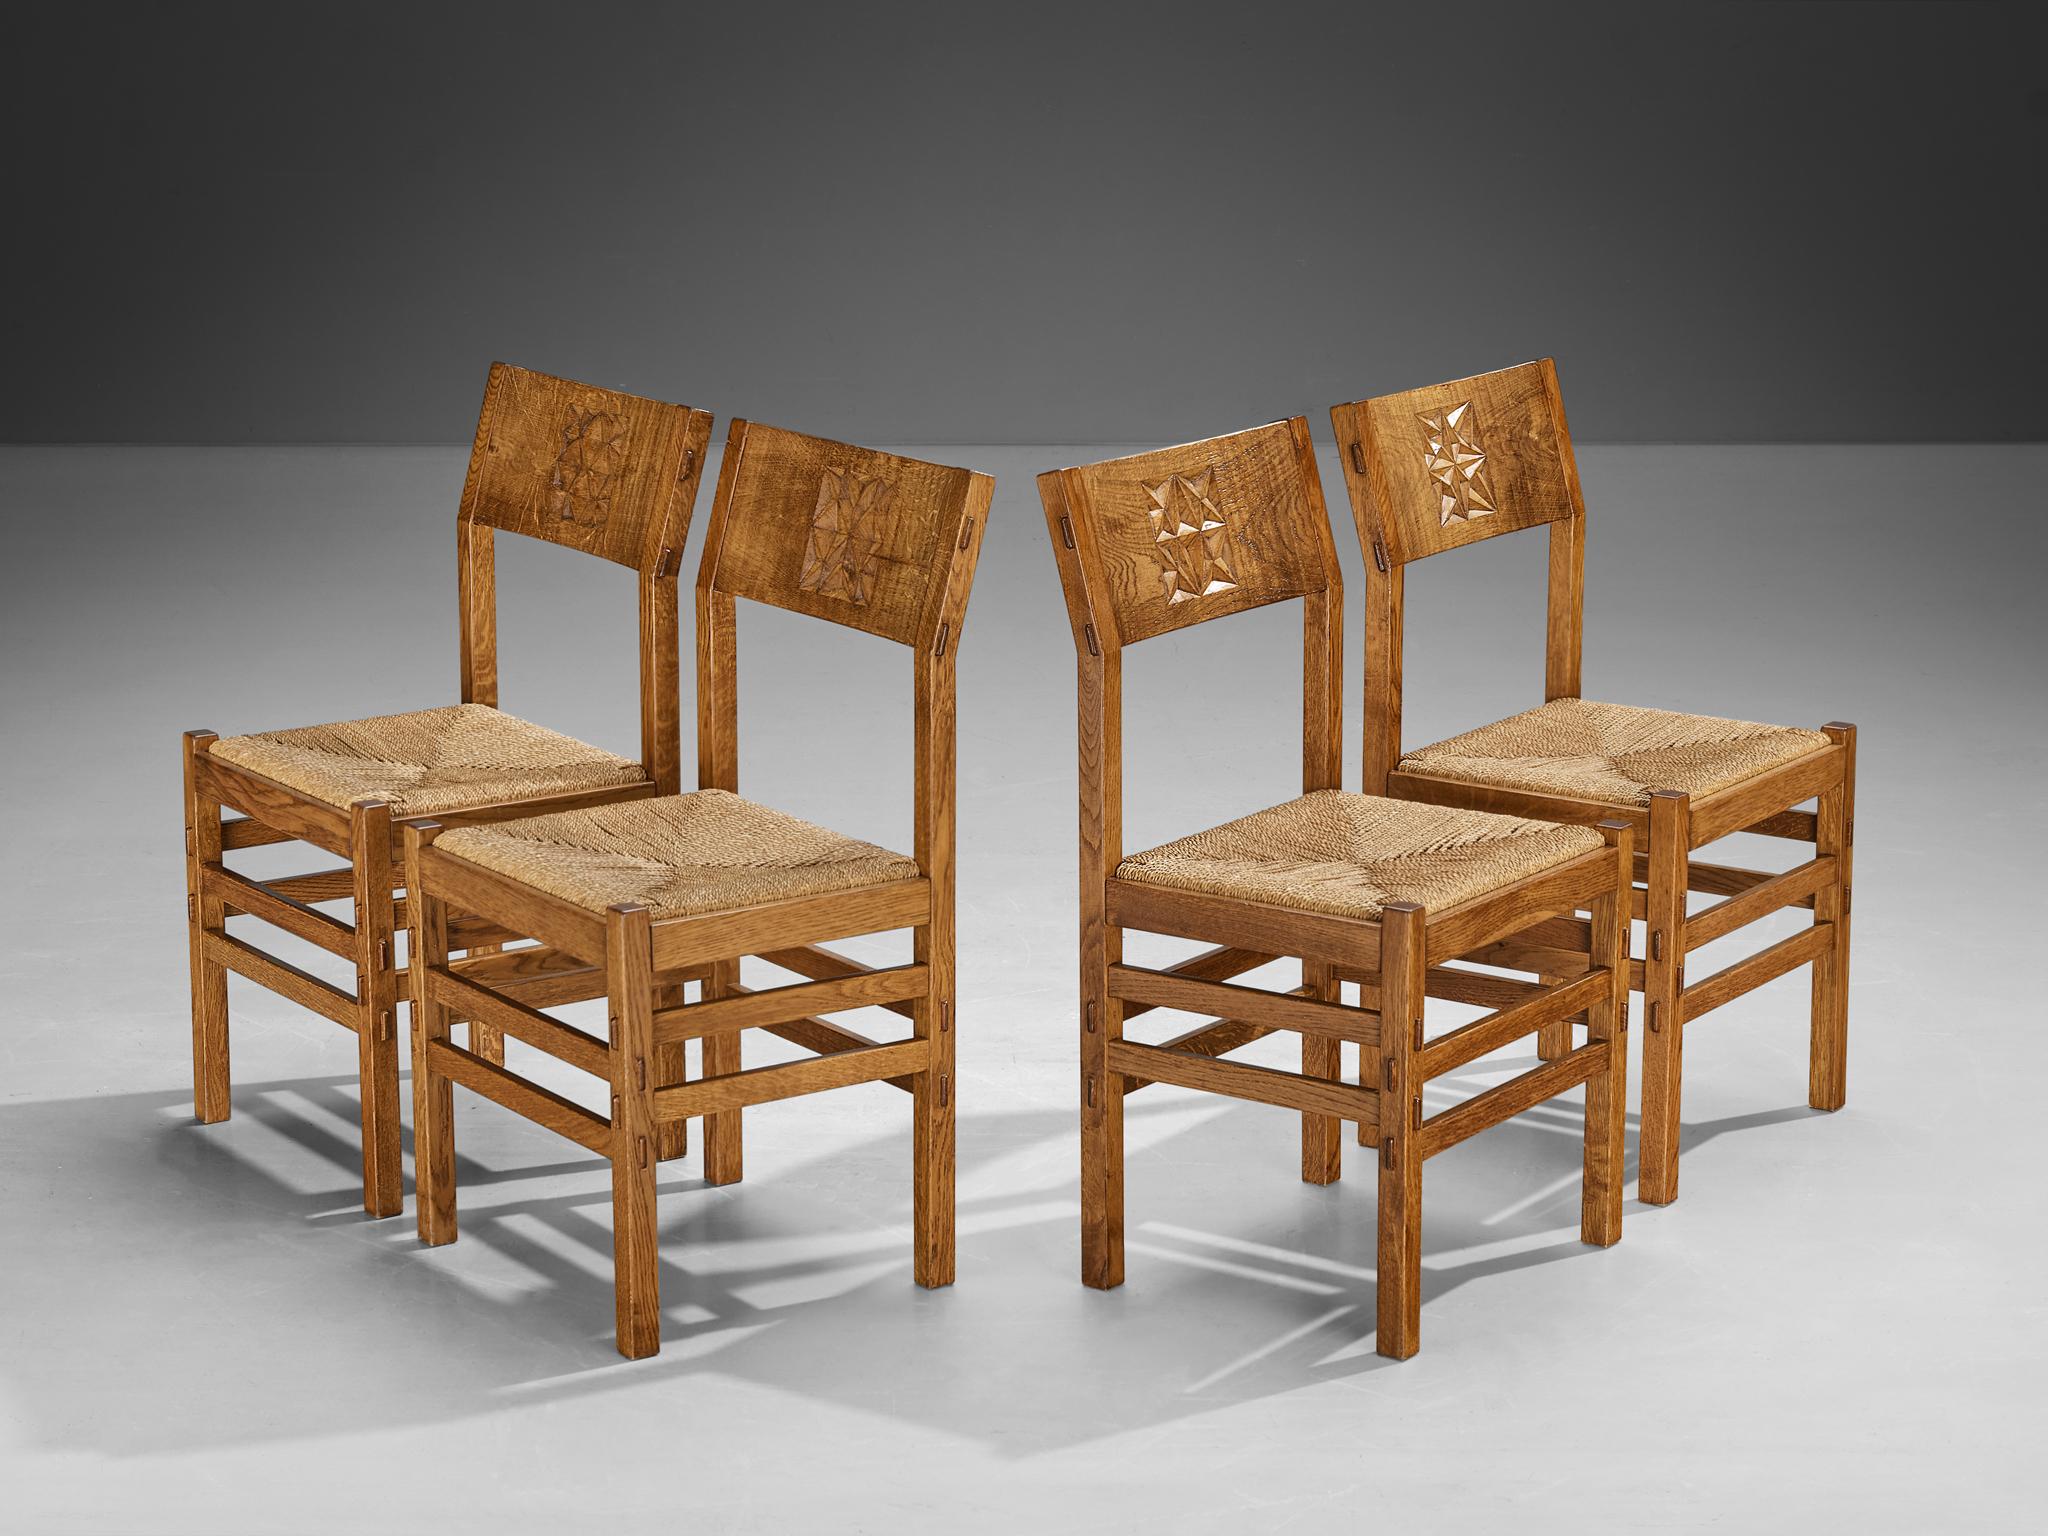 Giuseppe Rivadossi pour Officina Rivadossi, ensemble de quatre chaises de salle à manger, chêne, paille, Italie, années 1970

Un ensemble exceptionnel de chaises du sculpteur et designer italien Giuseppe Rivadossi. Les chaises sont